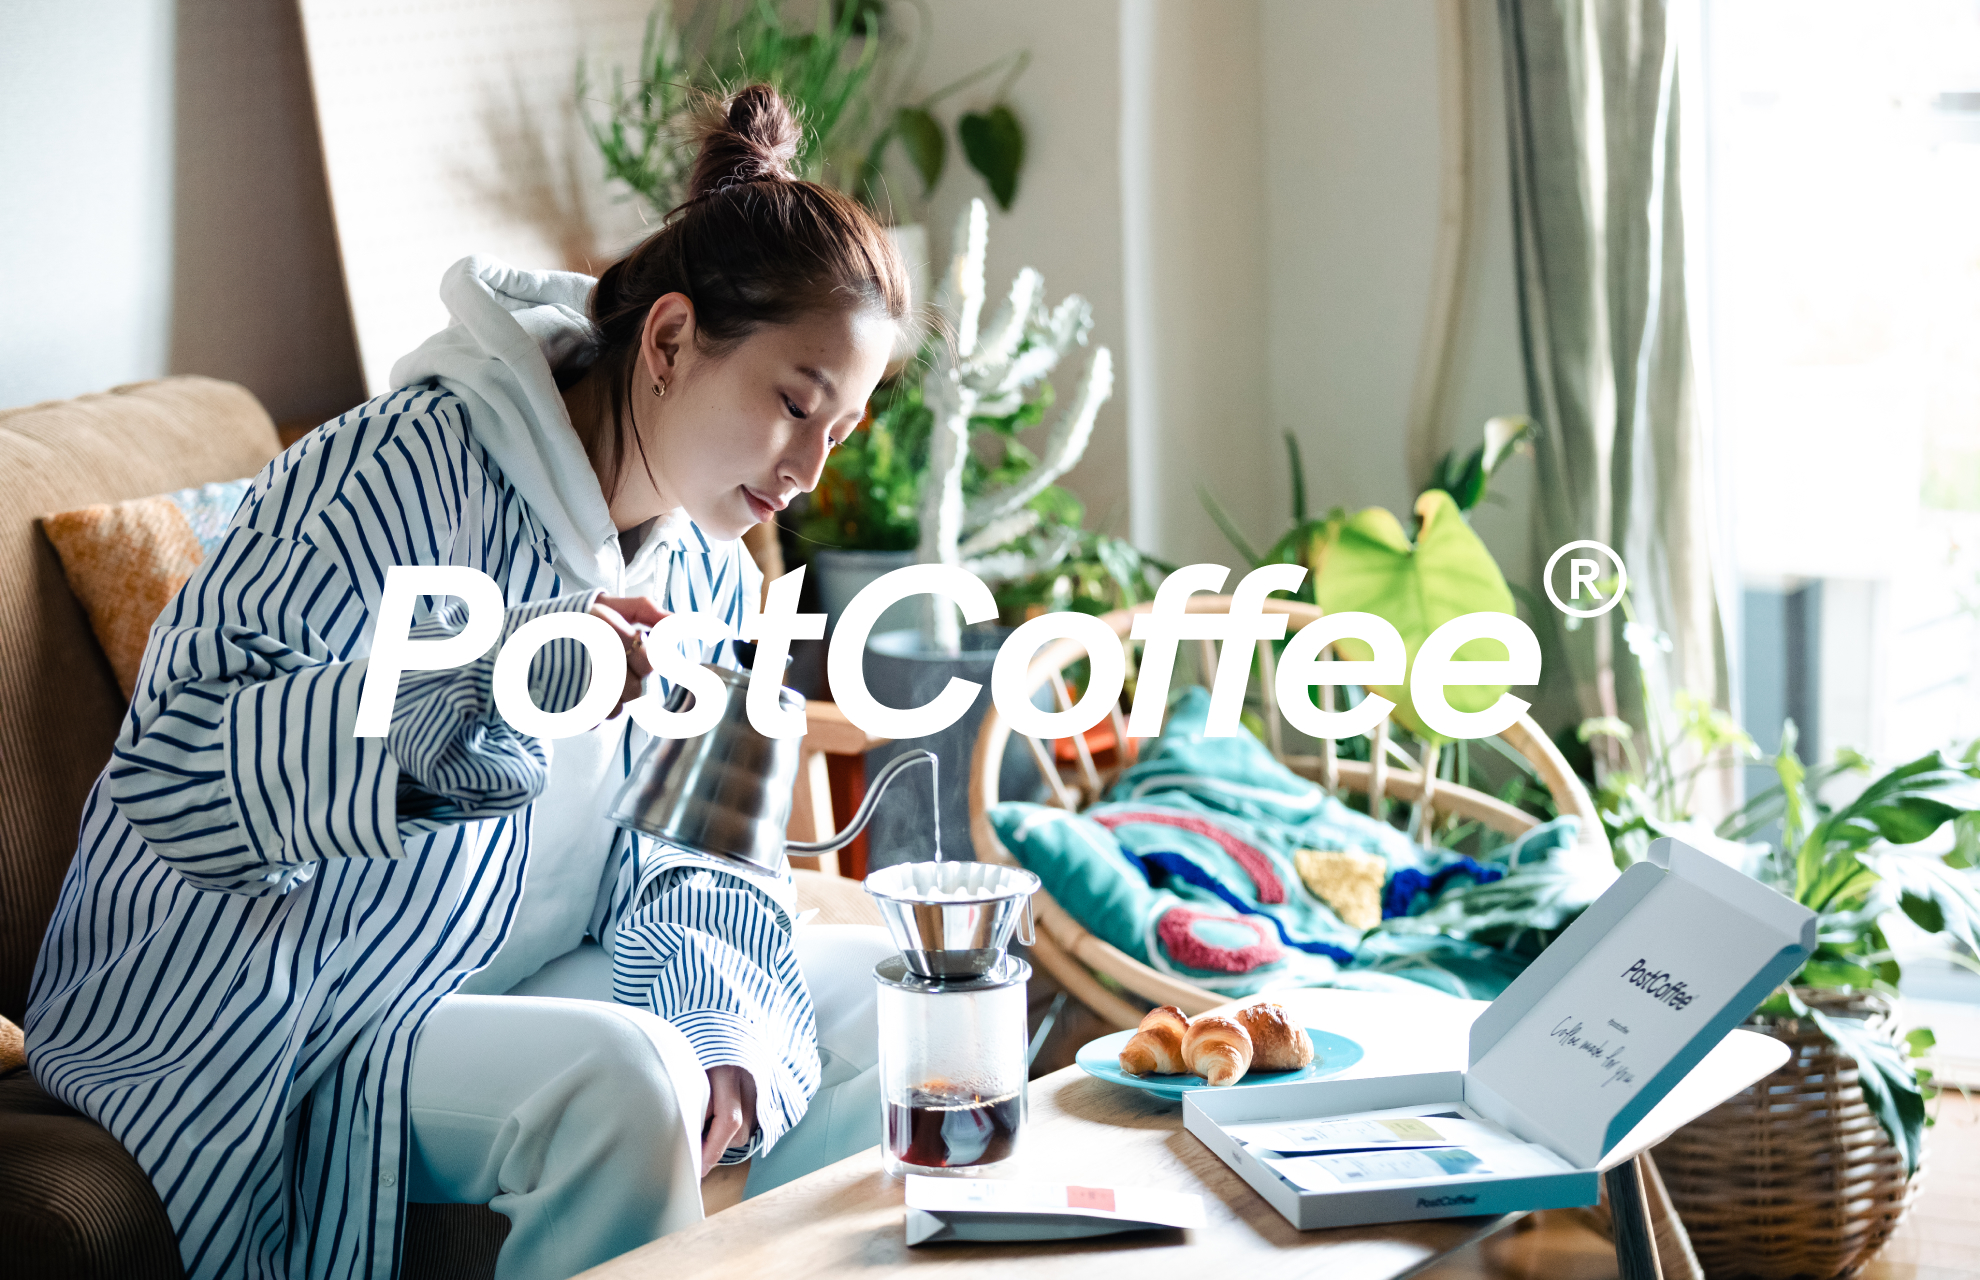 同社が提供する『PostCoffee』は、毎日のコーヒーライフを一気に楽しくするサブスクリプションサービスだ。